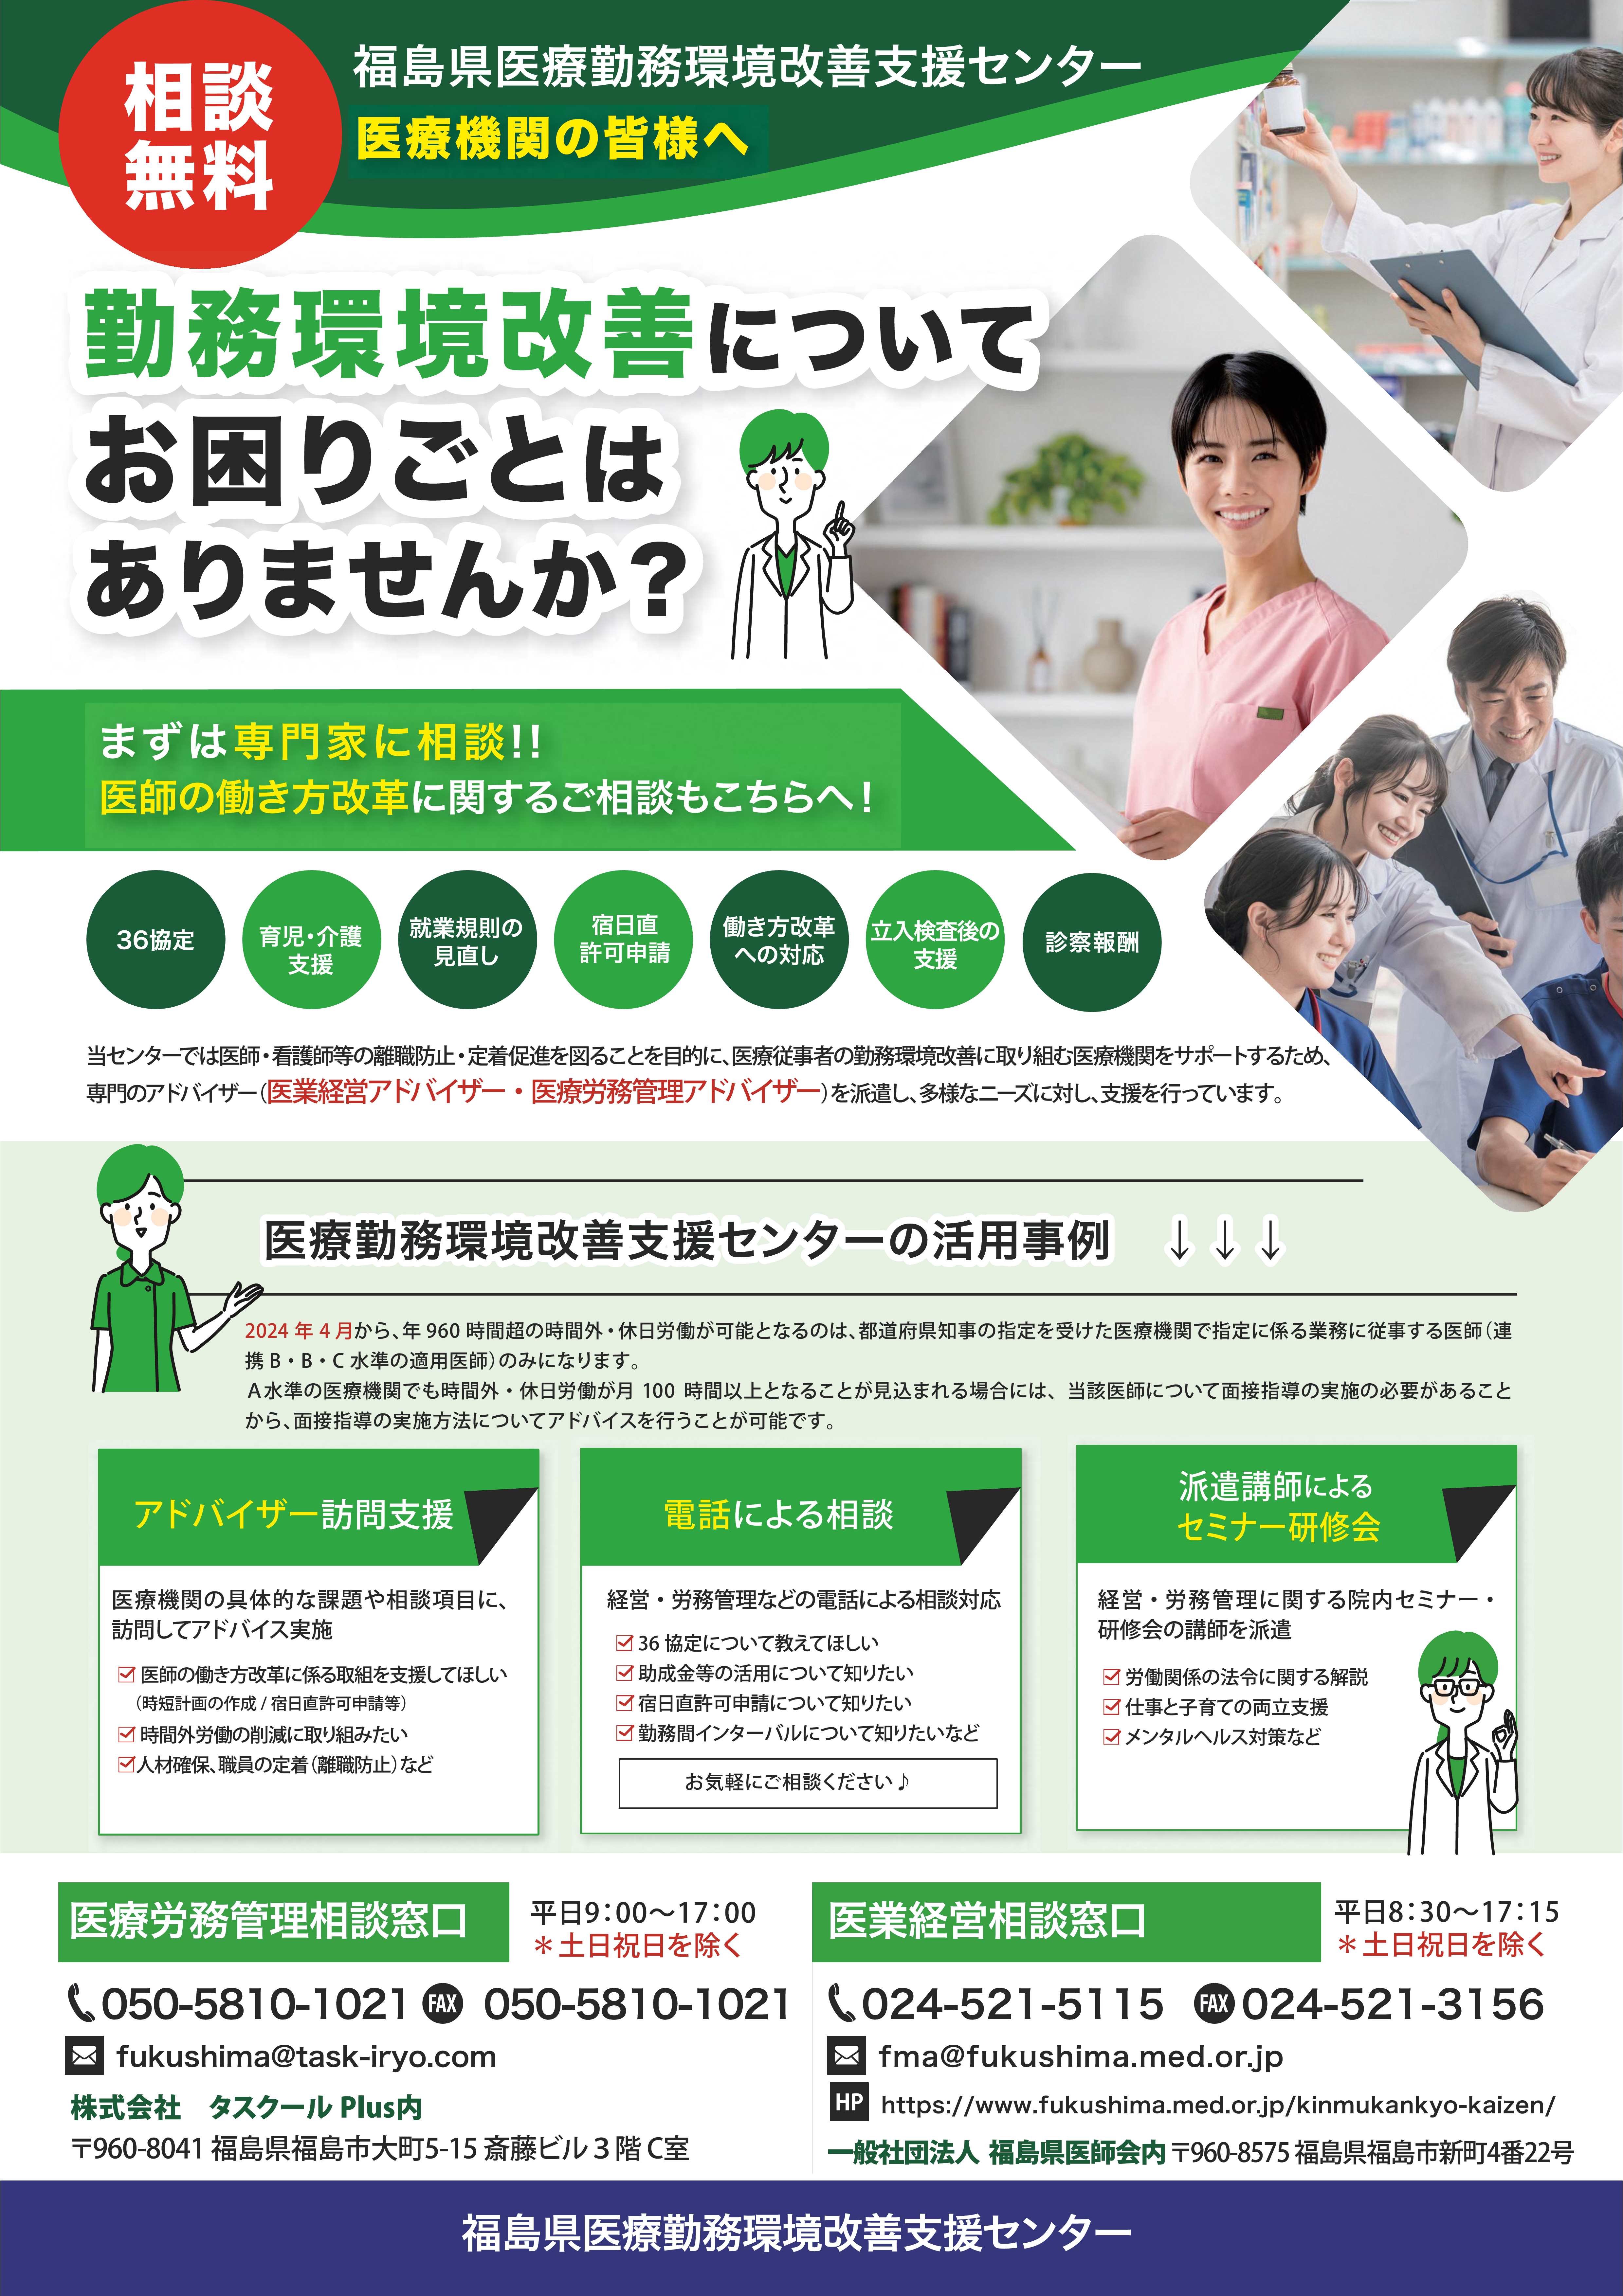 福島県医療勤務環境改善支援センターのチラシ